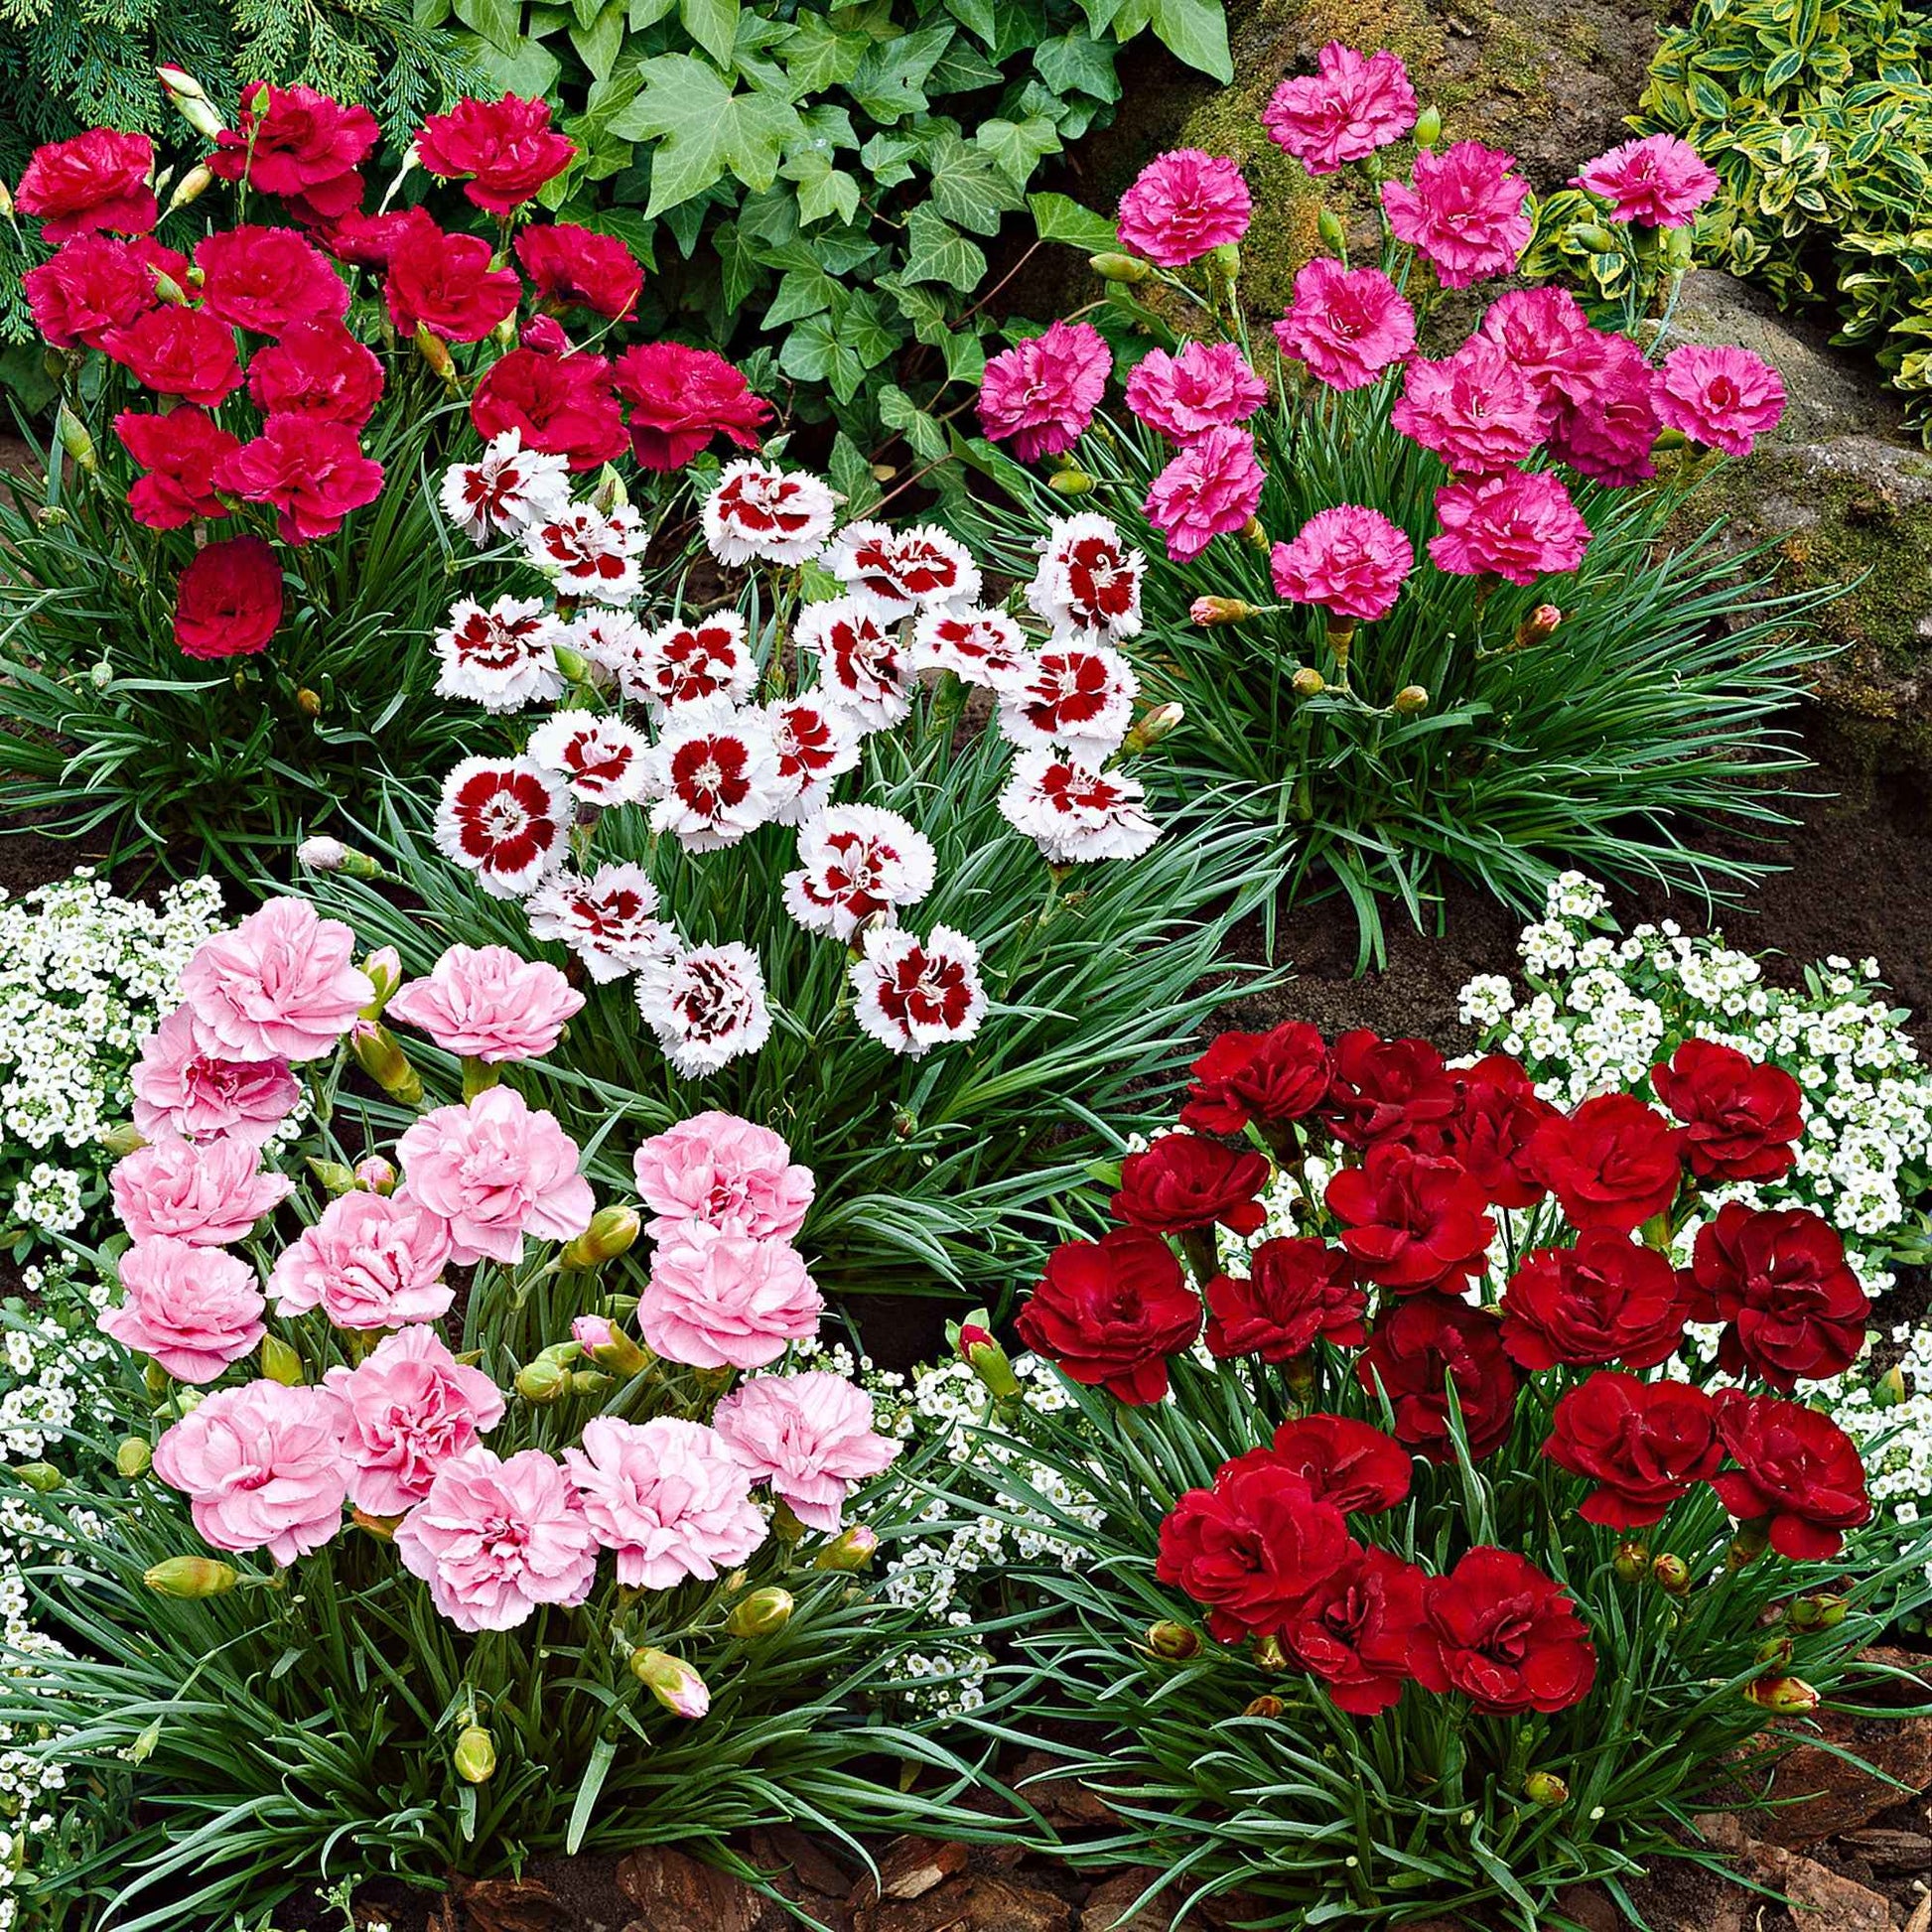 6x Grasanjer Dianthus -Mix 'Pretty Pink' Rood-Wit-Roze - Winterhard - Alle vaste tuinplanten